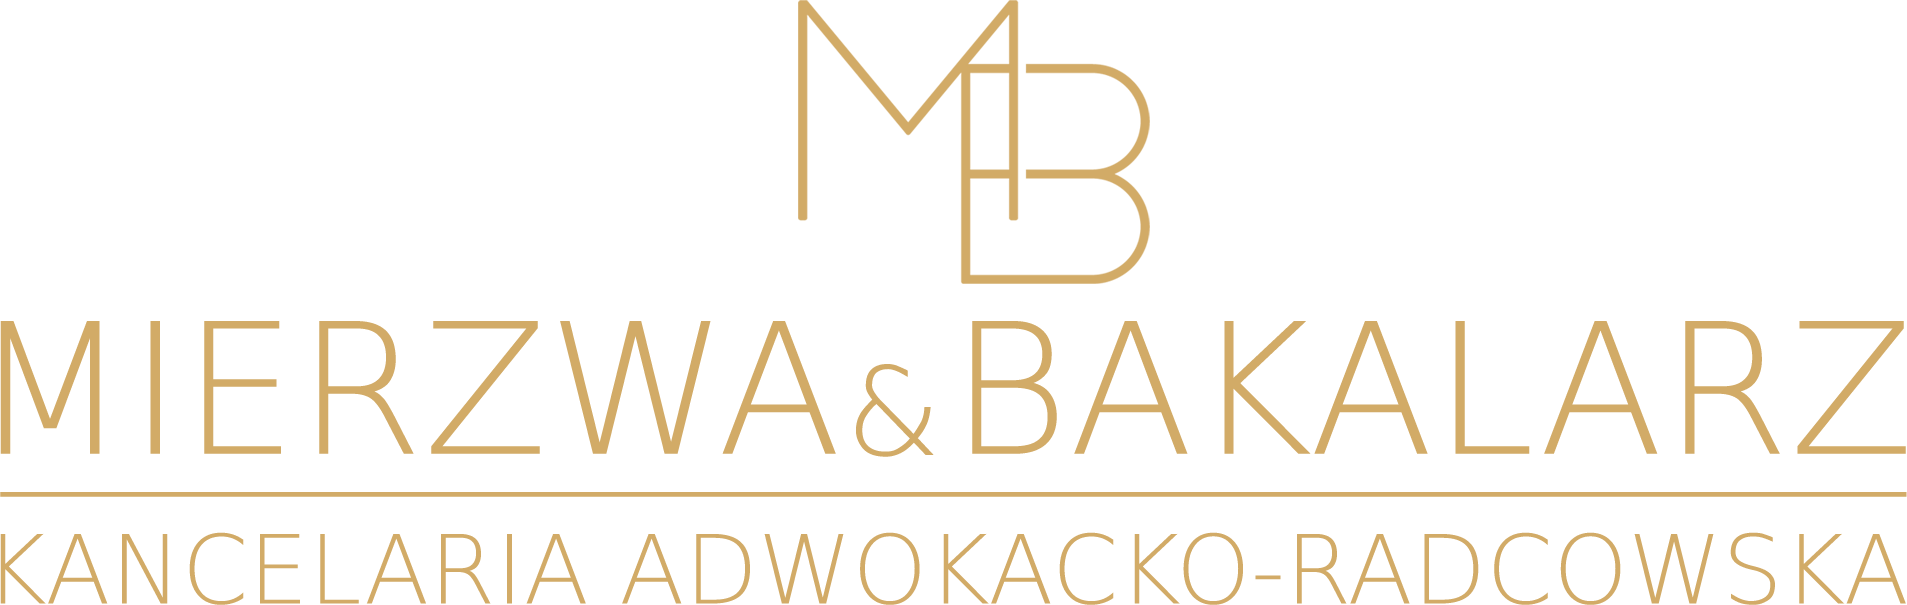 Mierzwa & Bakalarz Kancelaria Adwokacko - Radcowska